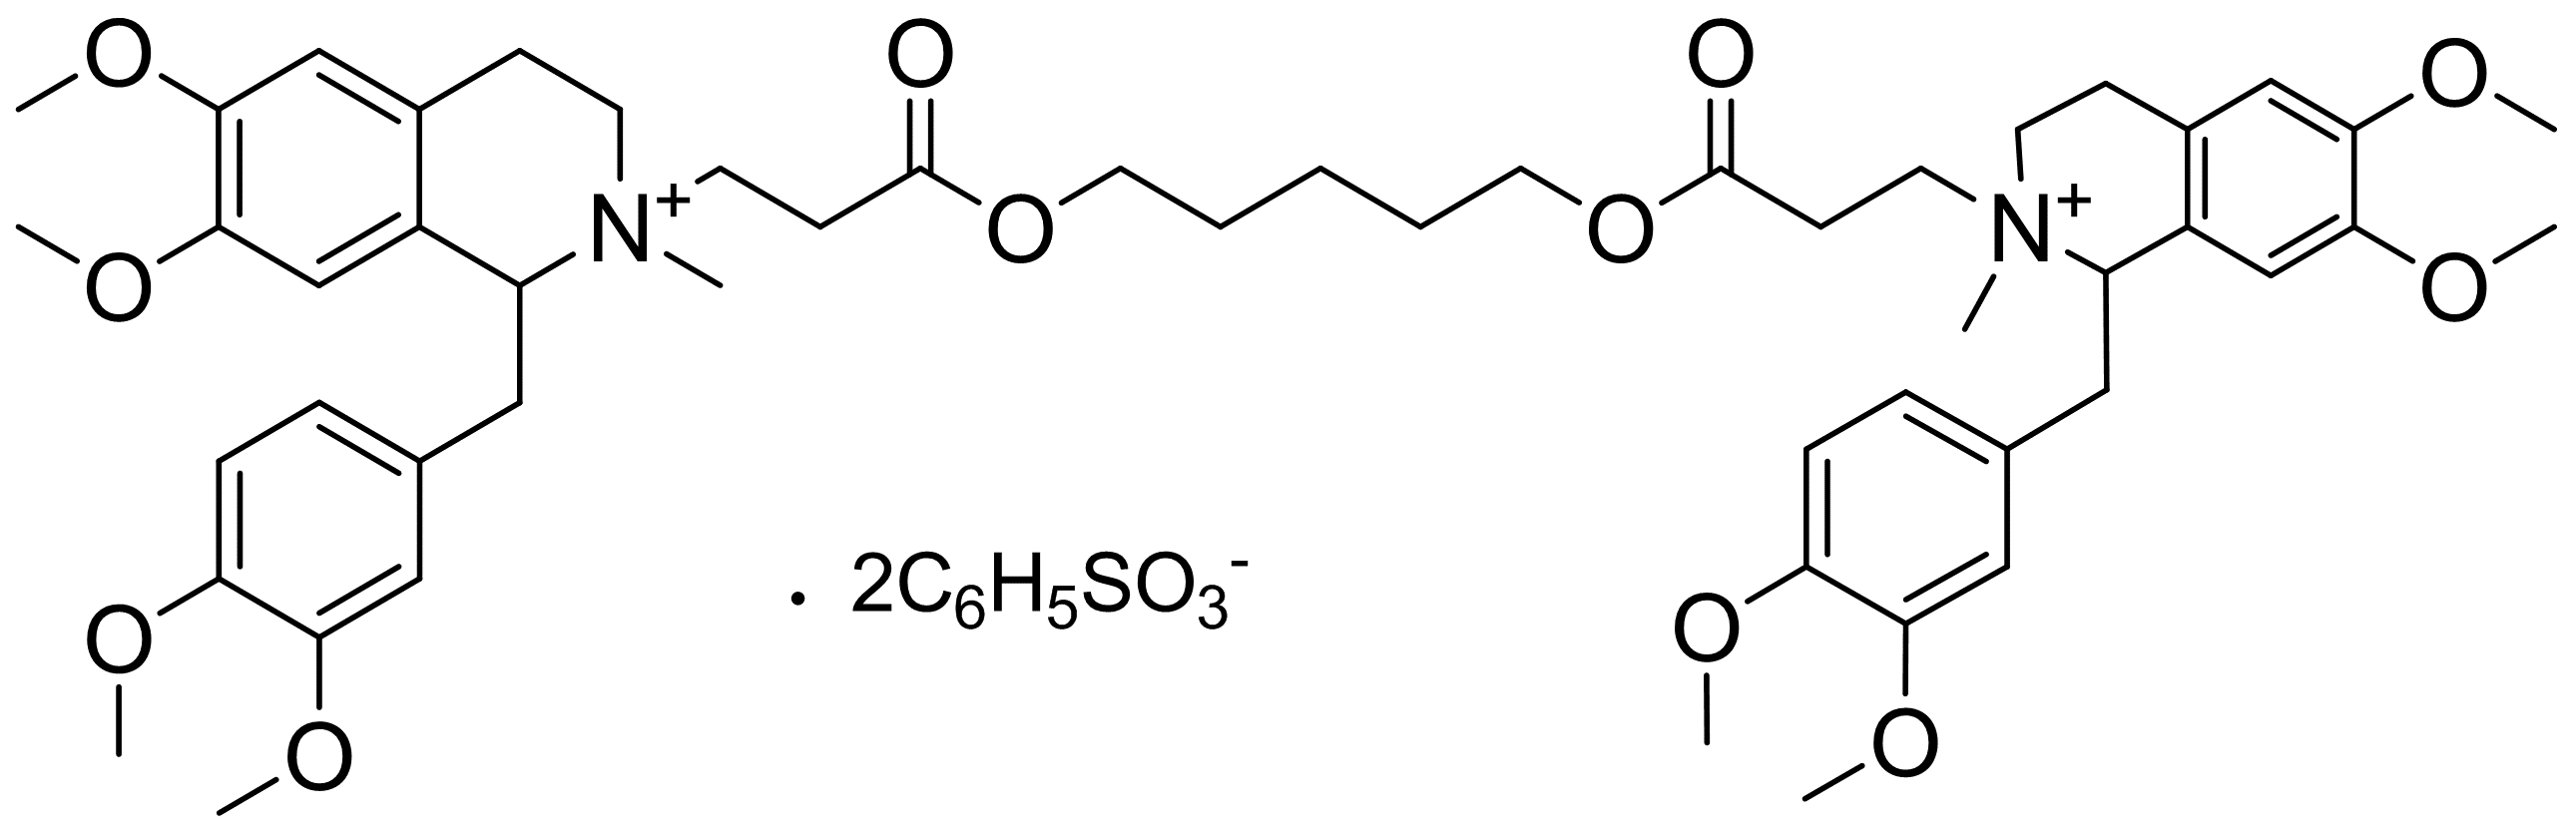 阿曲库铵苯磺酸盐|atracurium besylate|64228-81-5|tci|97.